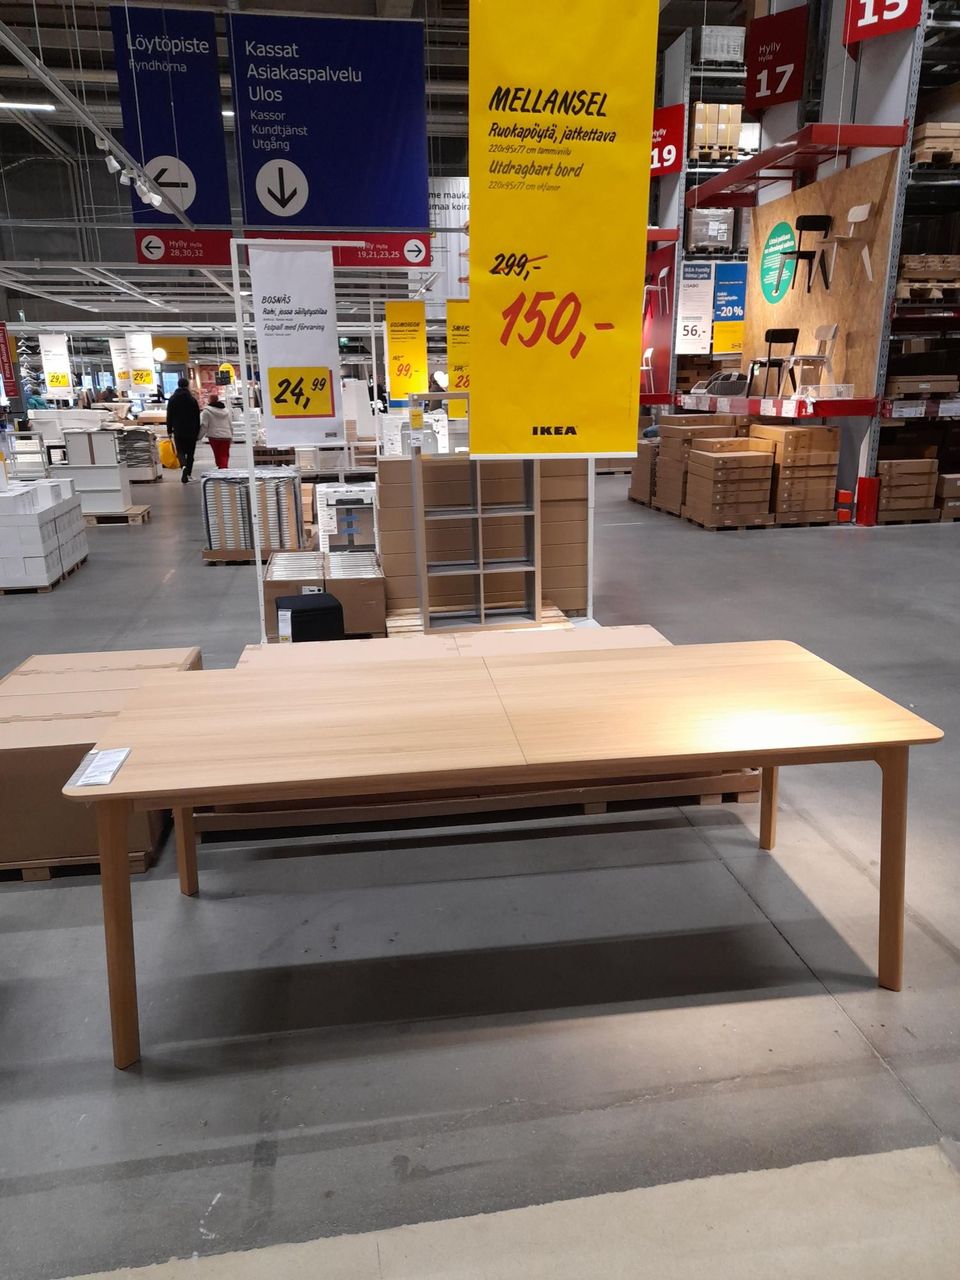 Ikea Mellansel ruokapöytä